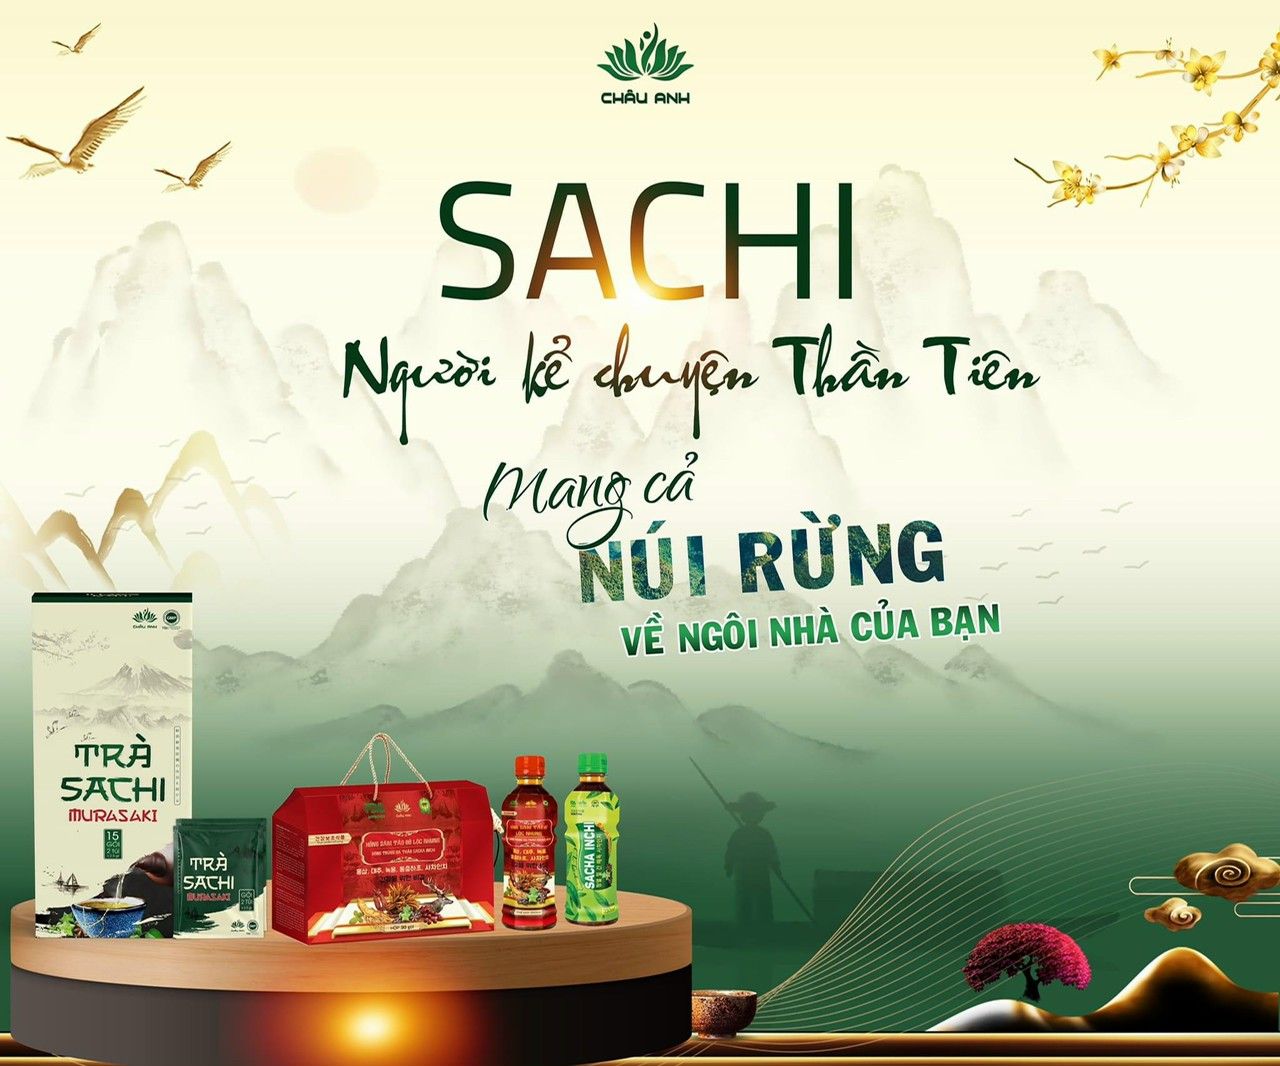 Sachi Châu Anh Farm đón đoàn xuyên Việt farmstay